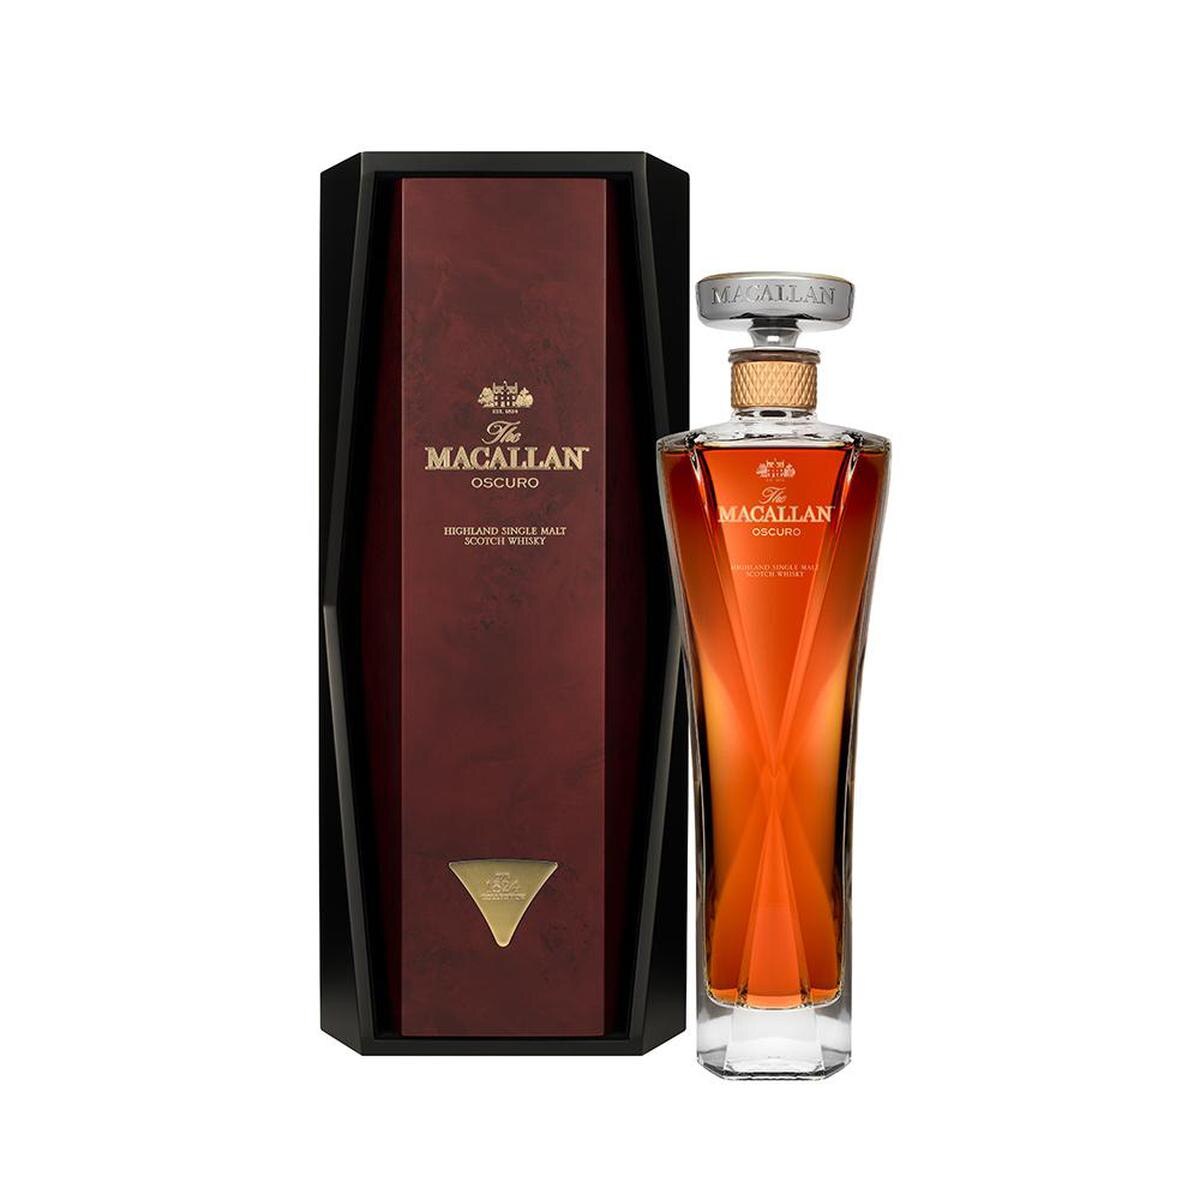 The Macallan 1824 Oscuro Whisky 700ml